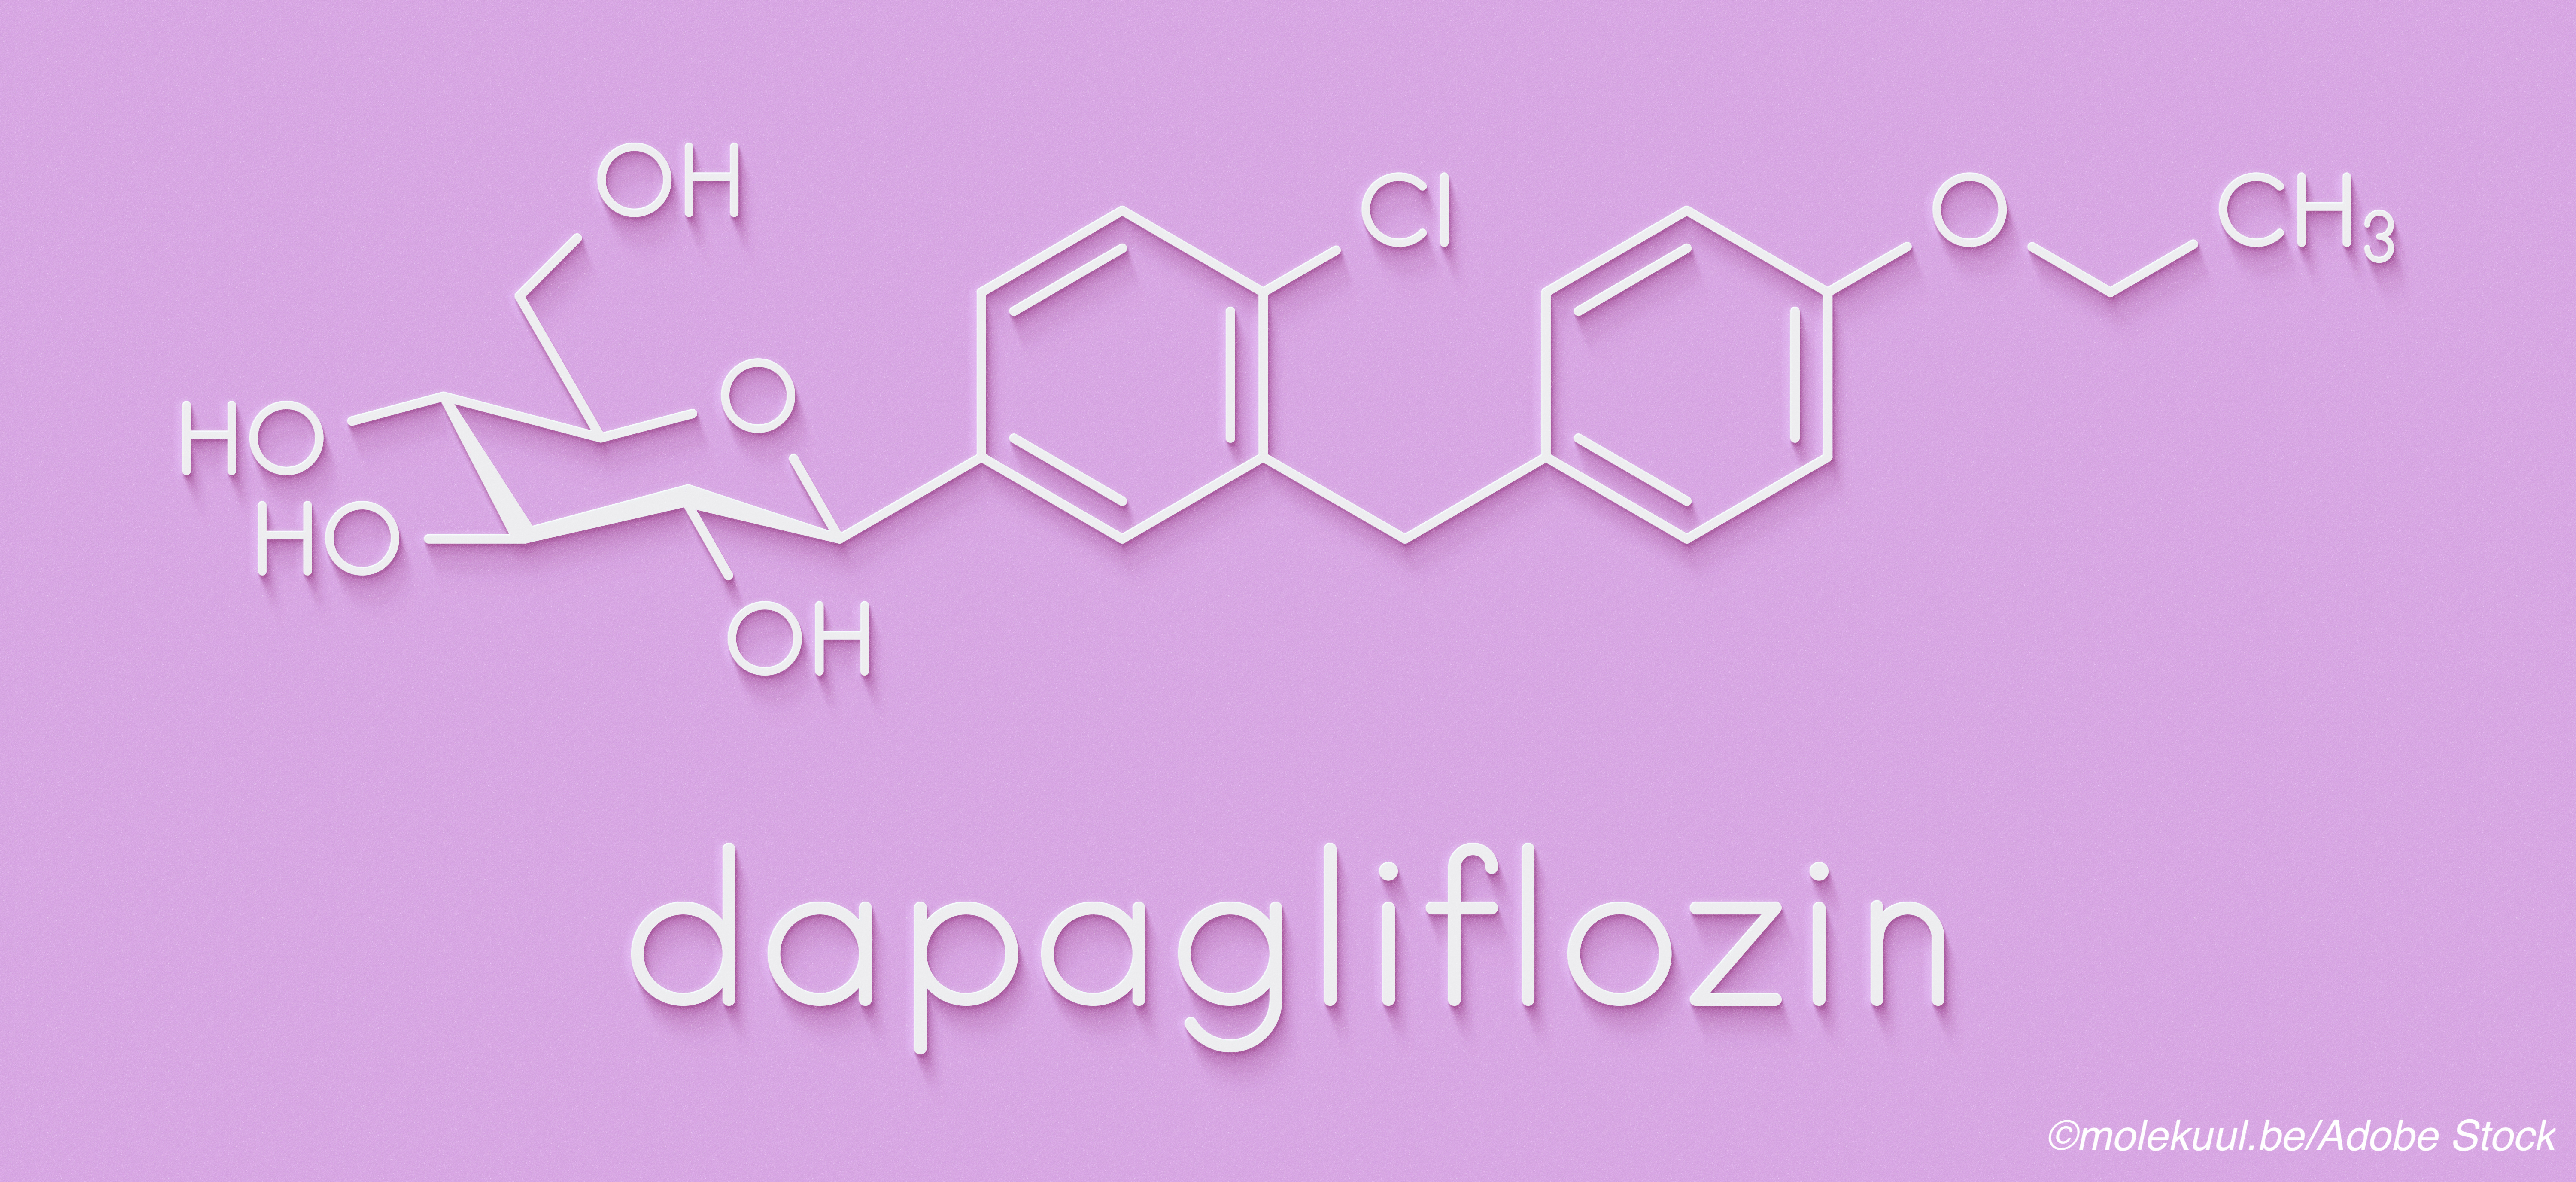 Drilling Down into DAPA-CKD Findings Confirms Dapagliflozin Benefit